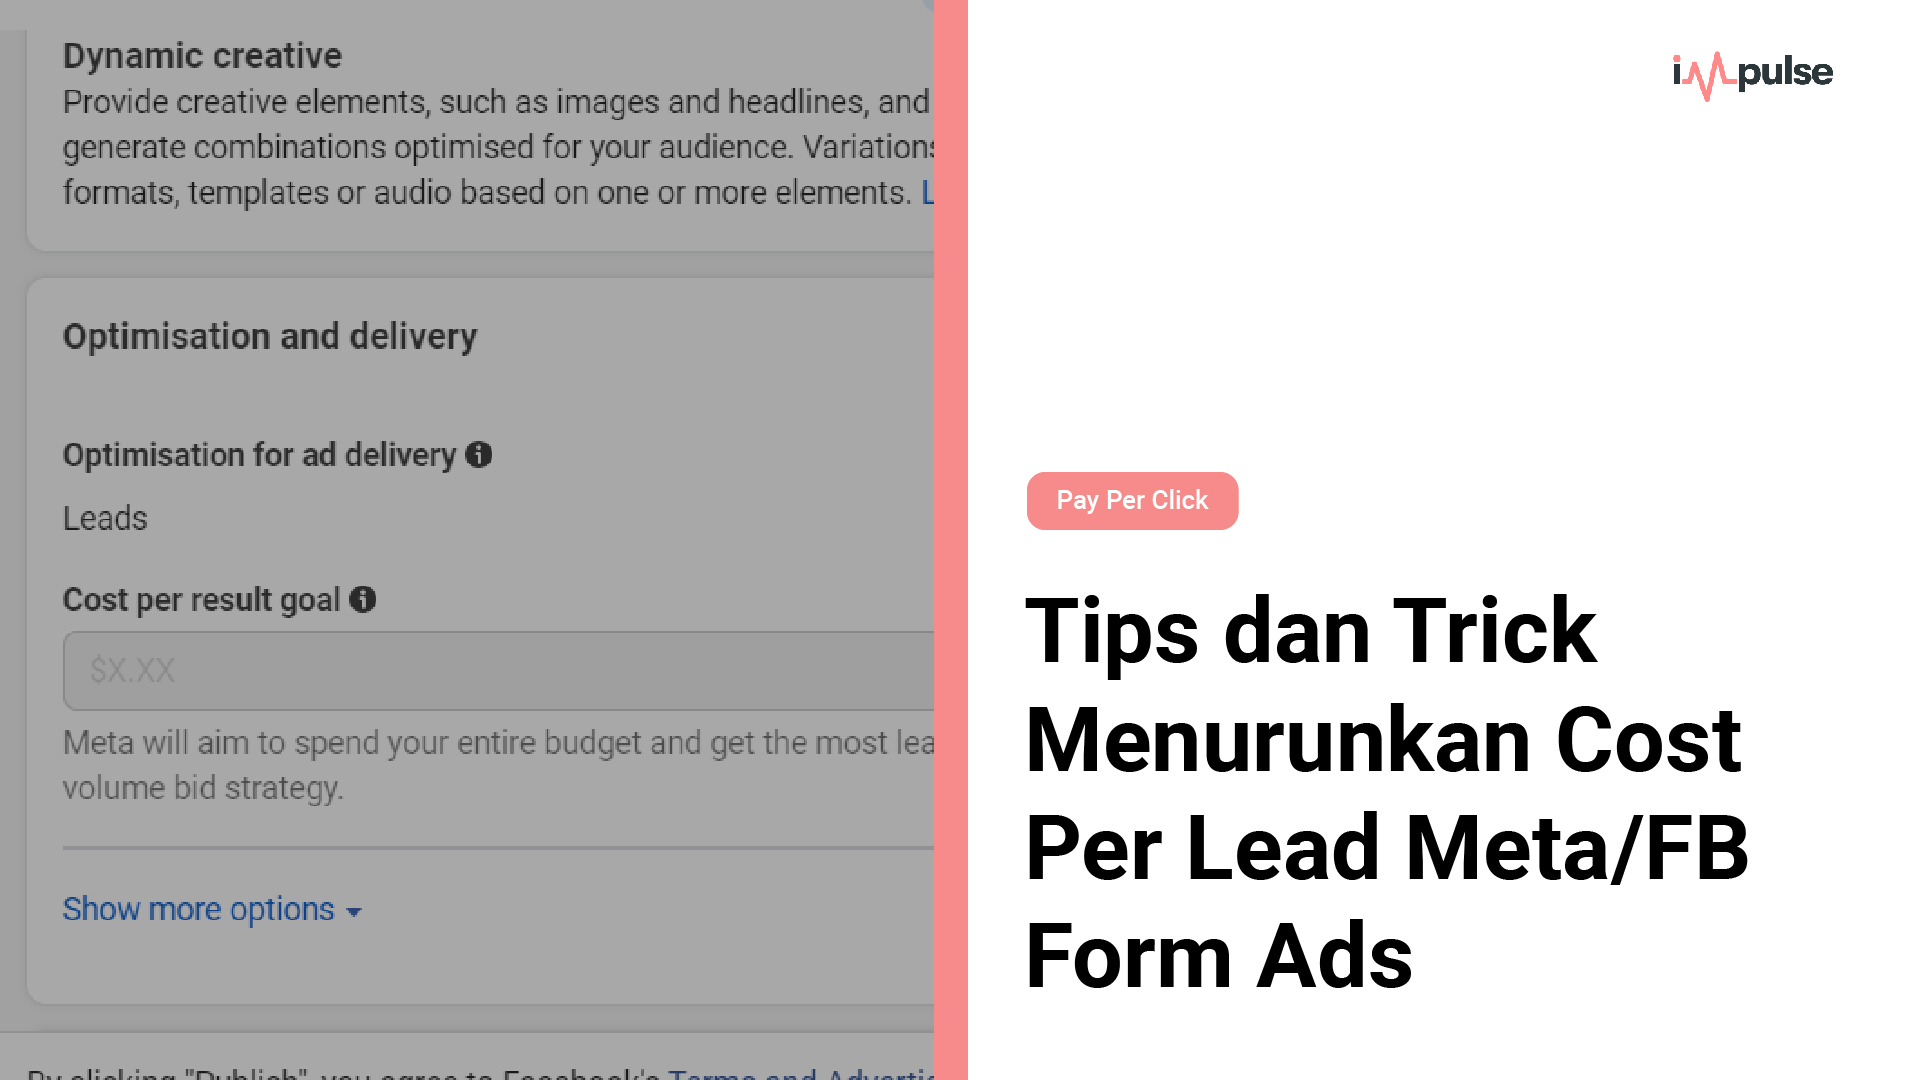 Tips dan Trick Menurunkan Cost Per Lead Meta/FB Form Ads